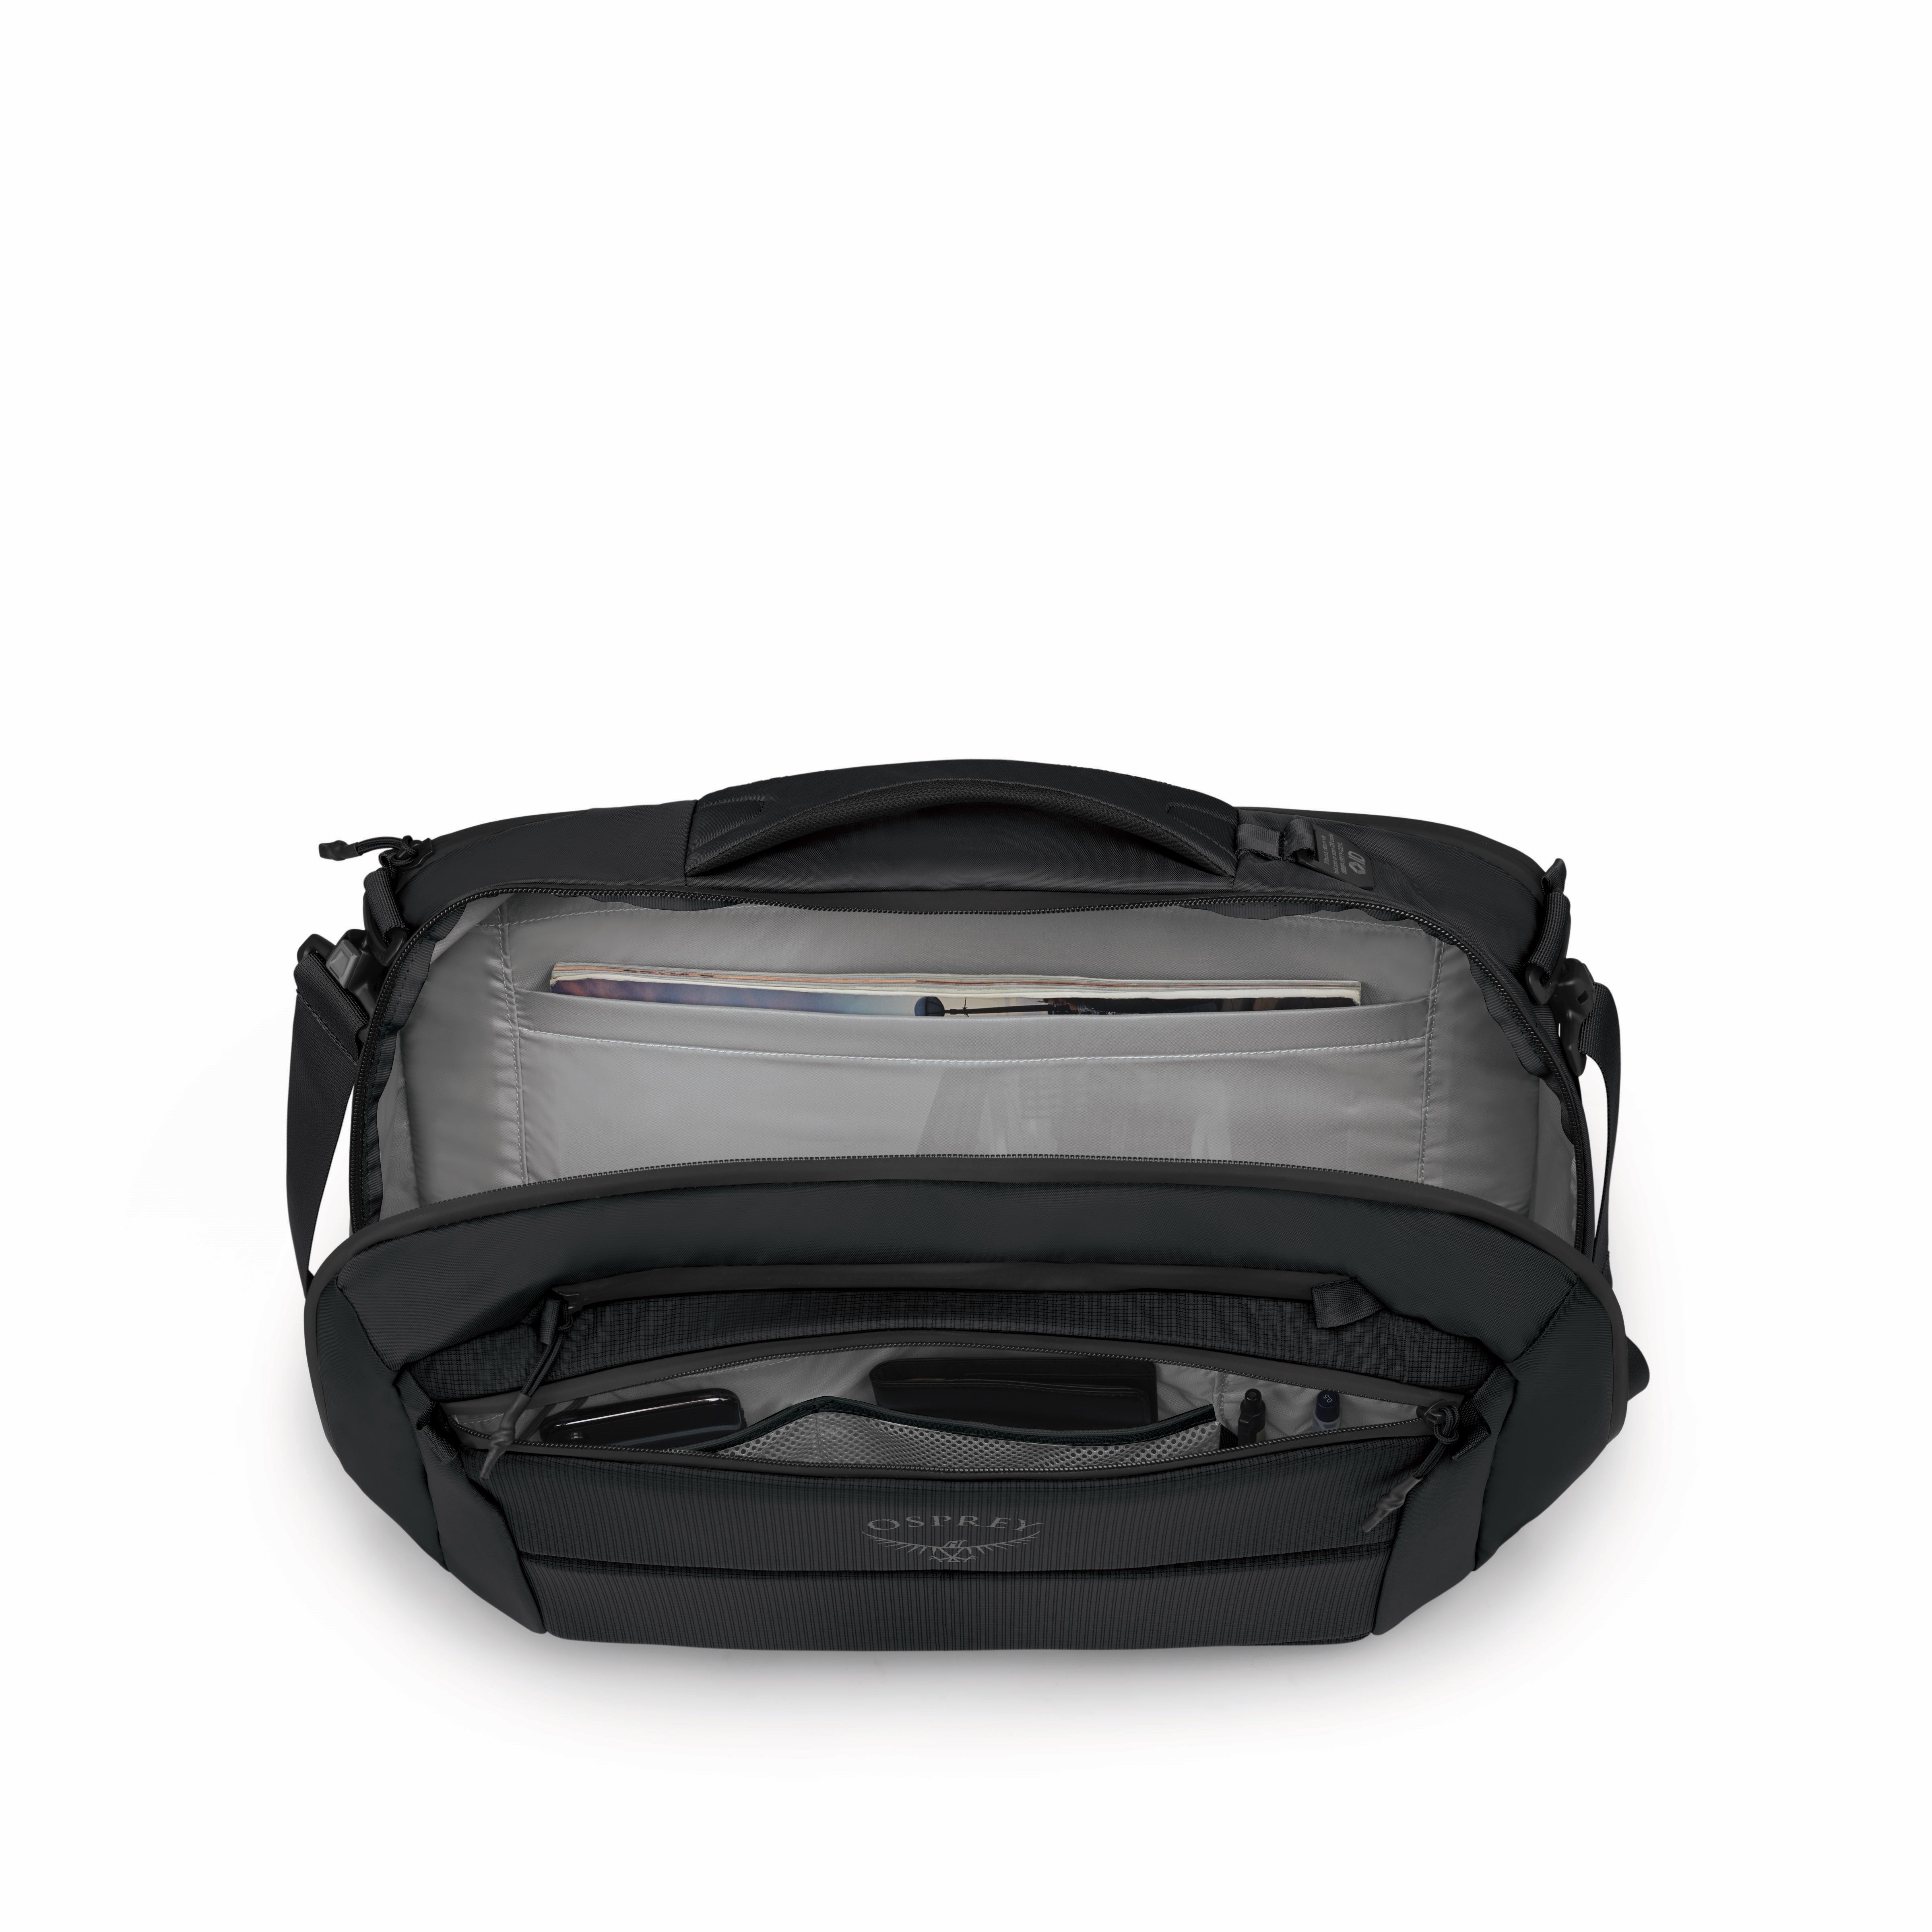 Sort boarding bag med PC lomme fra Osprey, modell  Ozone, her vises innsiden.